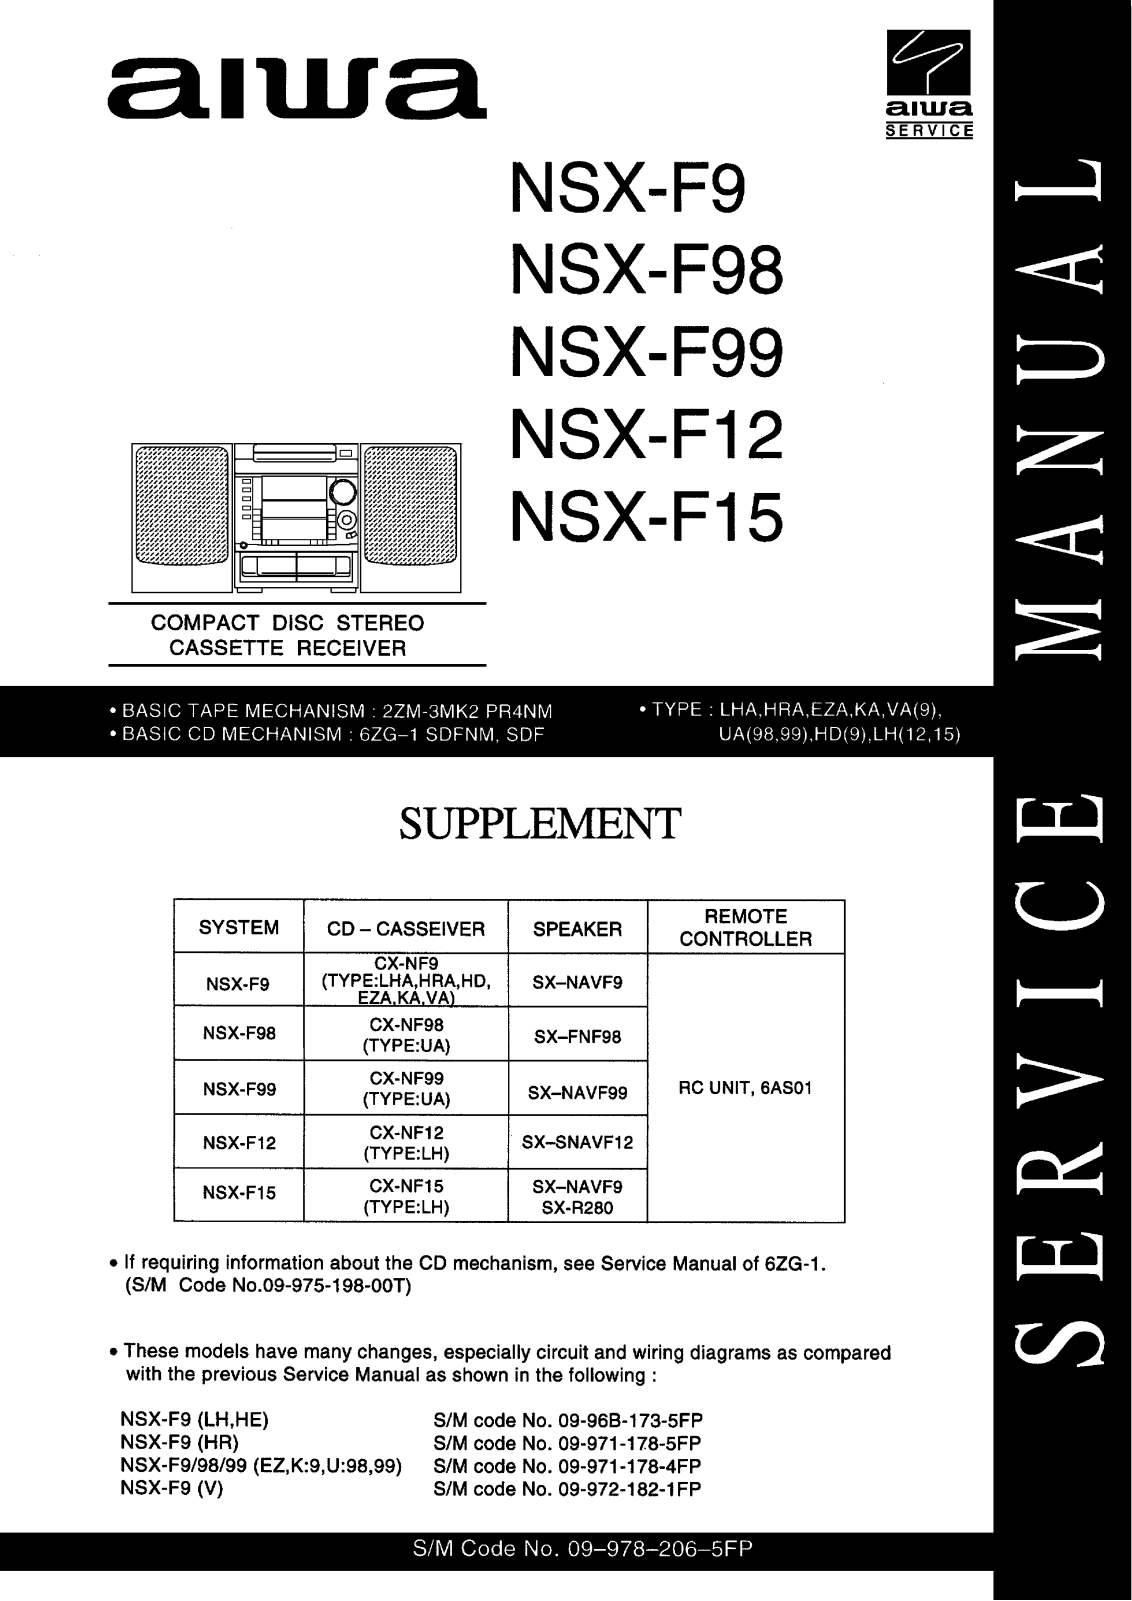 Aiwa nsx f9, NSX-f98, NSX-f99, NSX-f12, NSX-f15 Service Manual